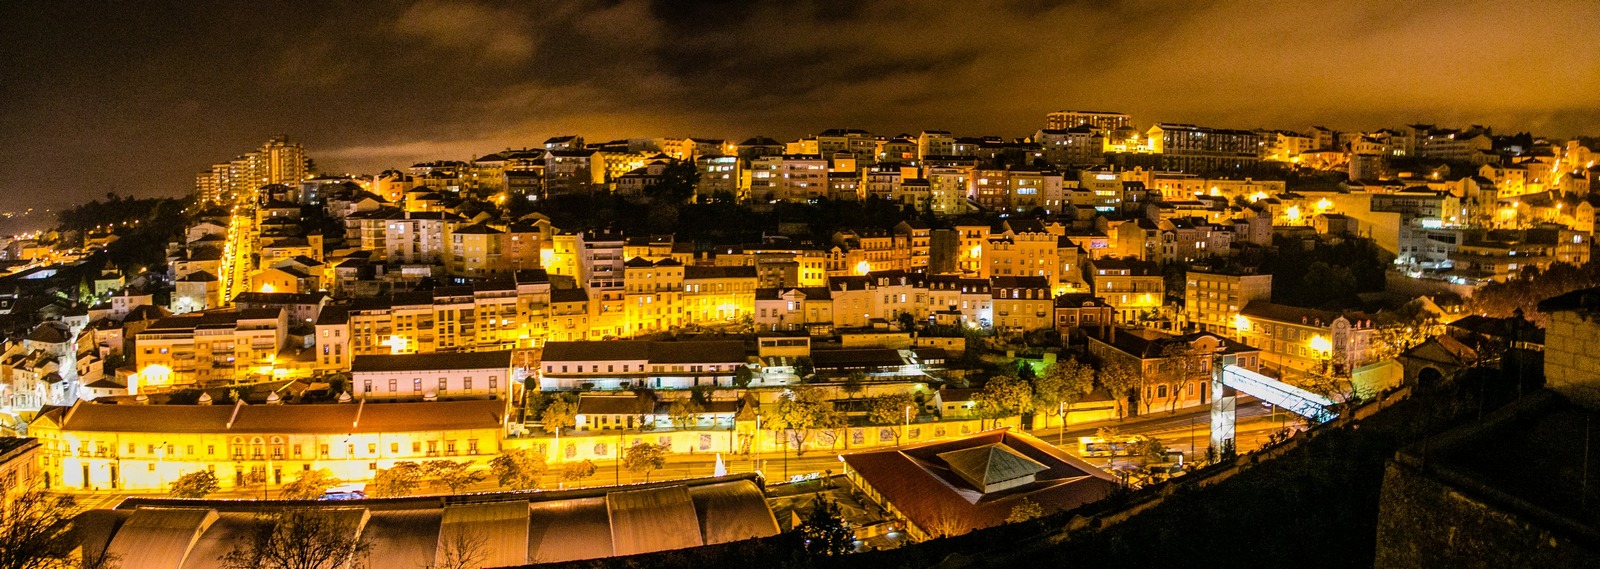 Coimbra 05